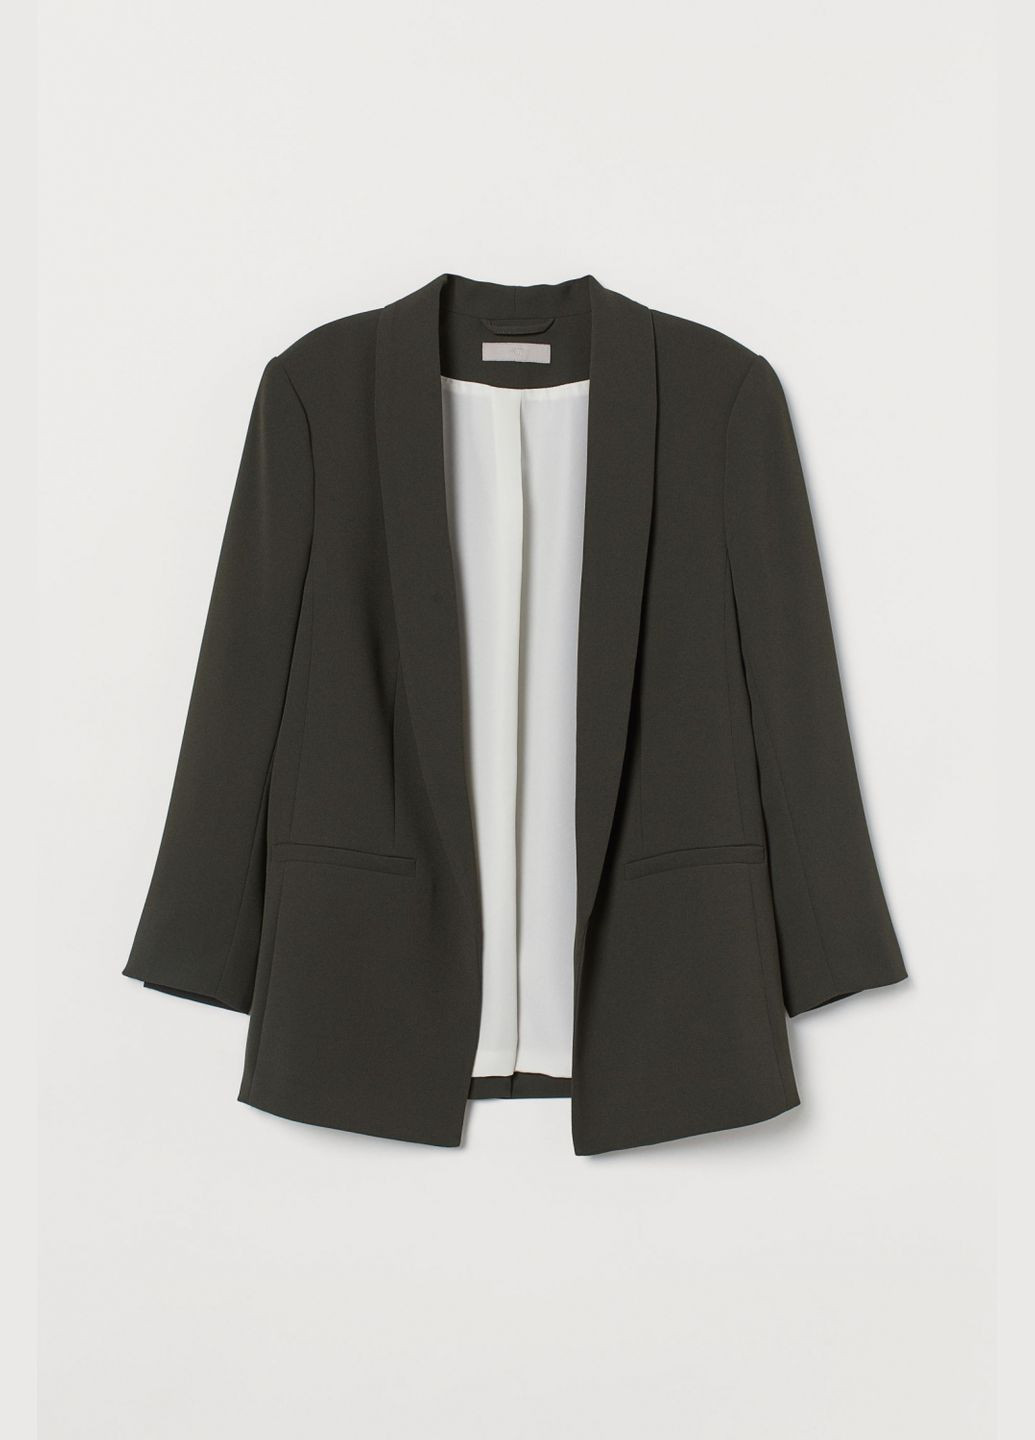 Хаки женский пиджак без застежки для женщины 0728156-024 H&M однотонный - демисезонный